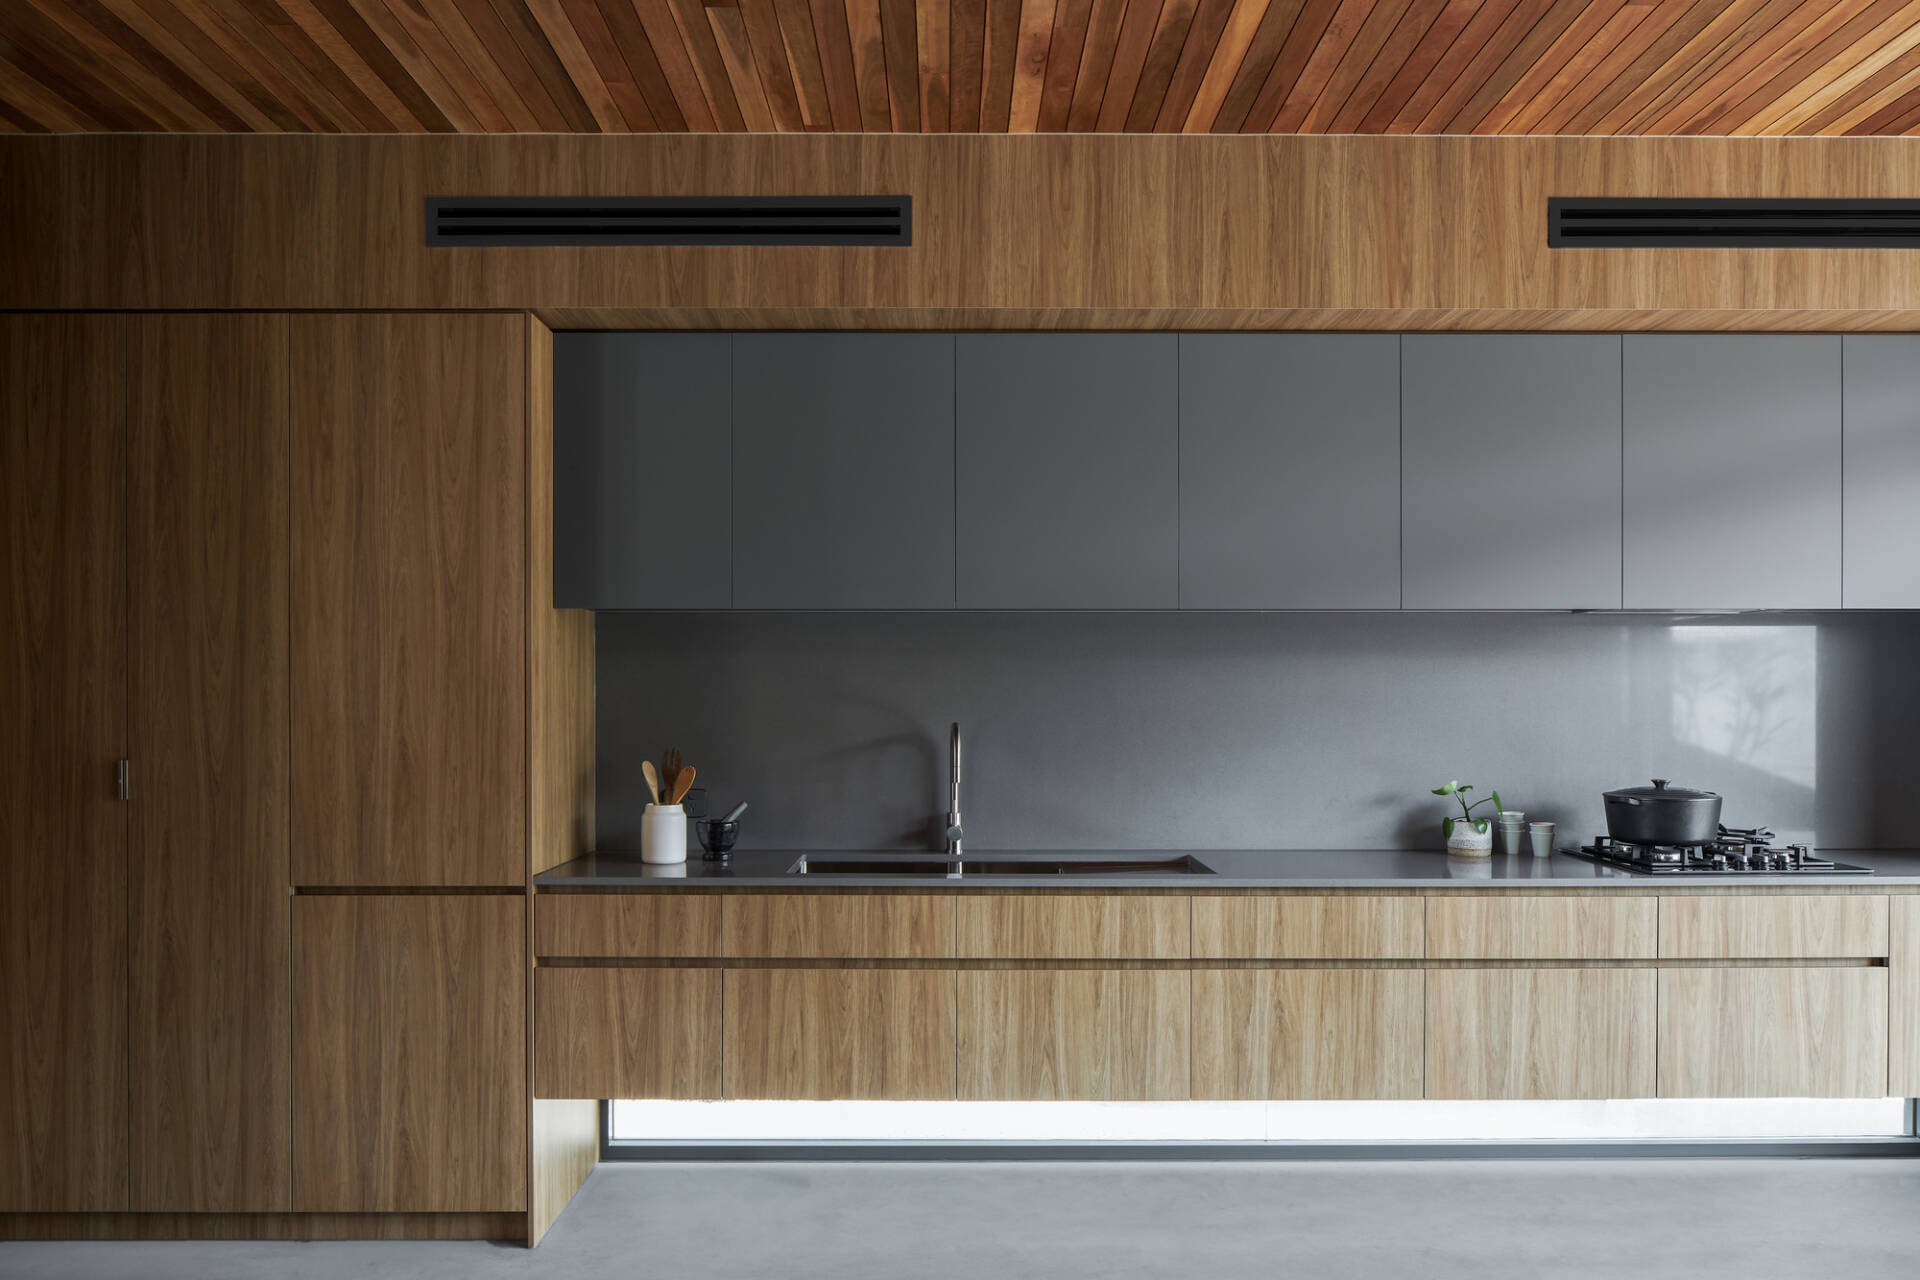 
Khu vực nhà bếp có nội thất được làm từ chất liệu gỗ mộc mạc kết hợp cùng với hợp kim tráng men màu xám trung tính, giúp cho không gian thêm sang trọng
